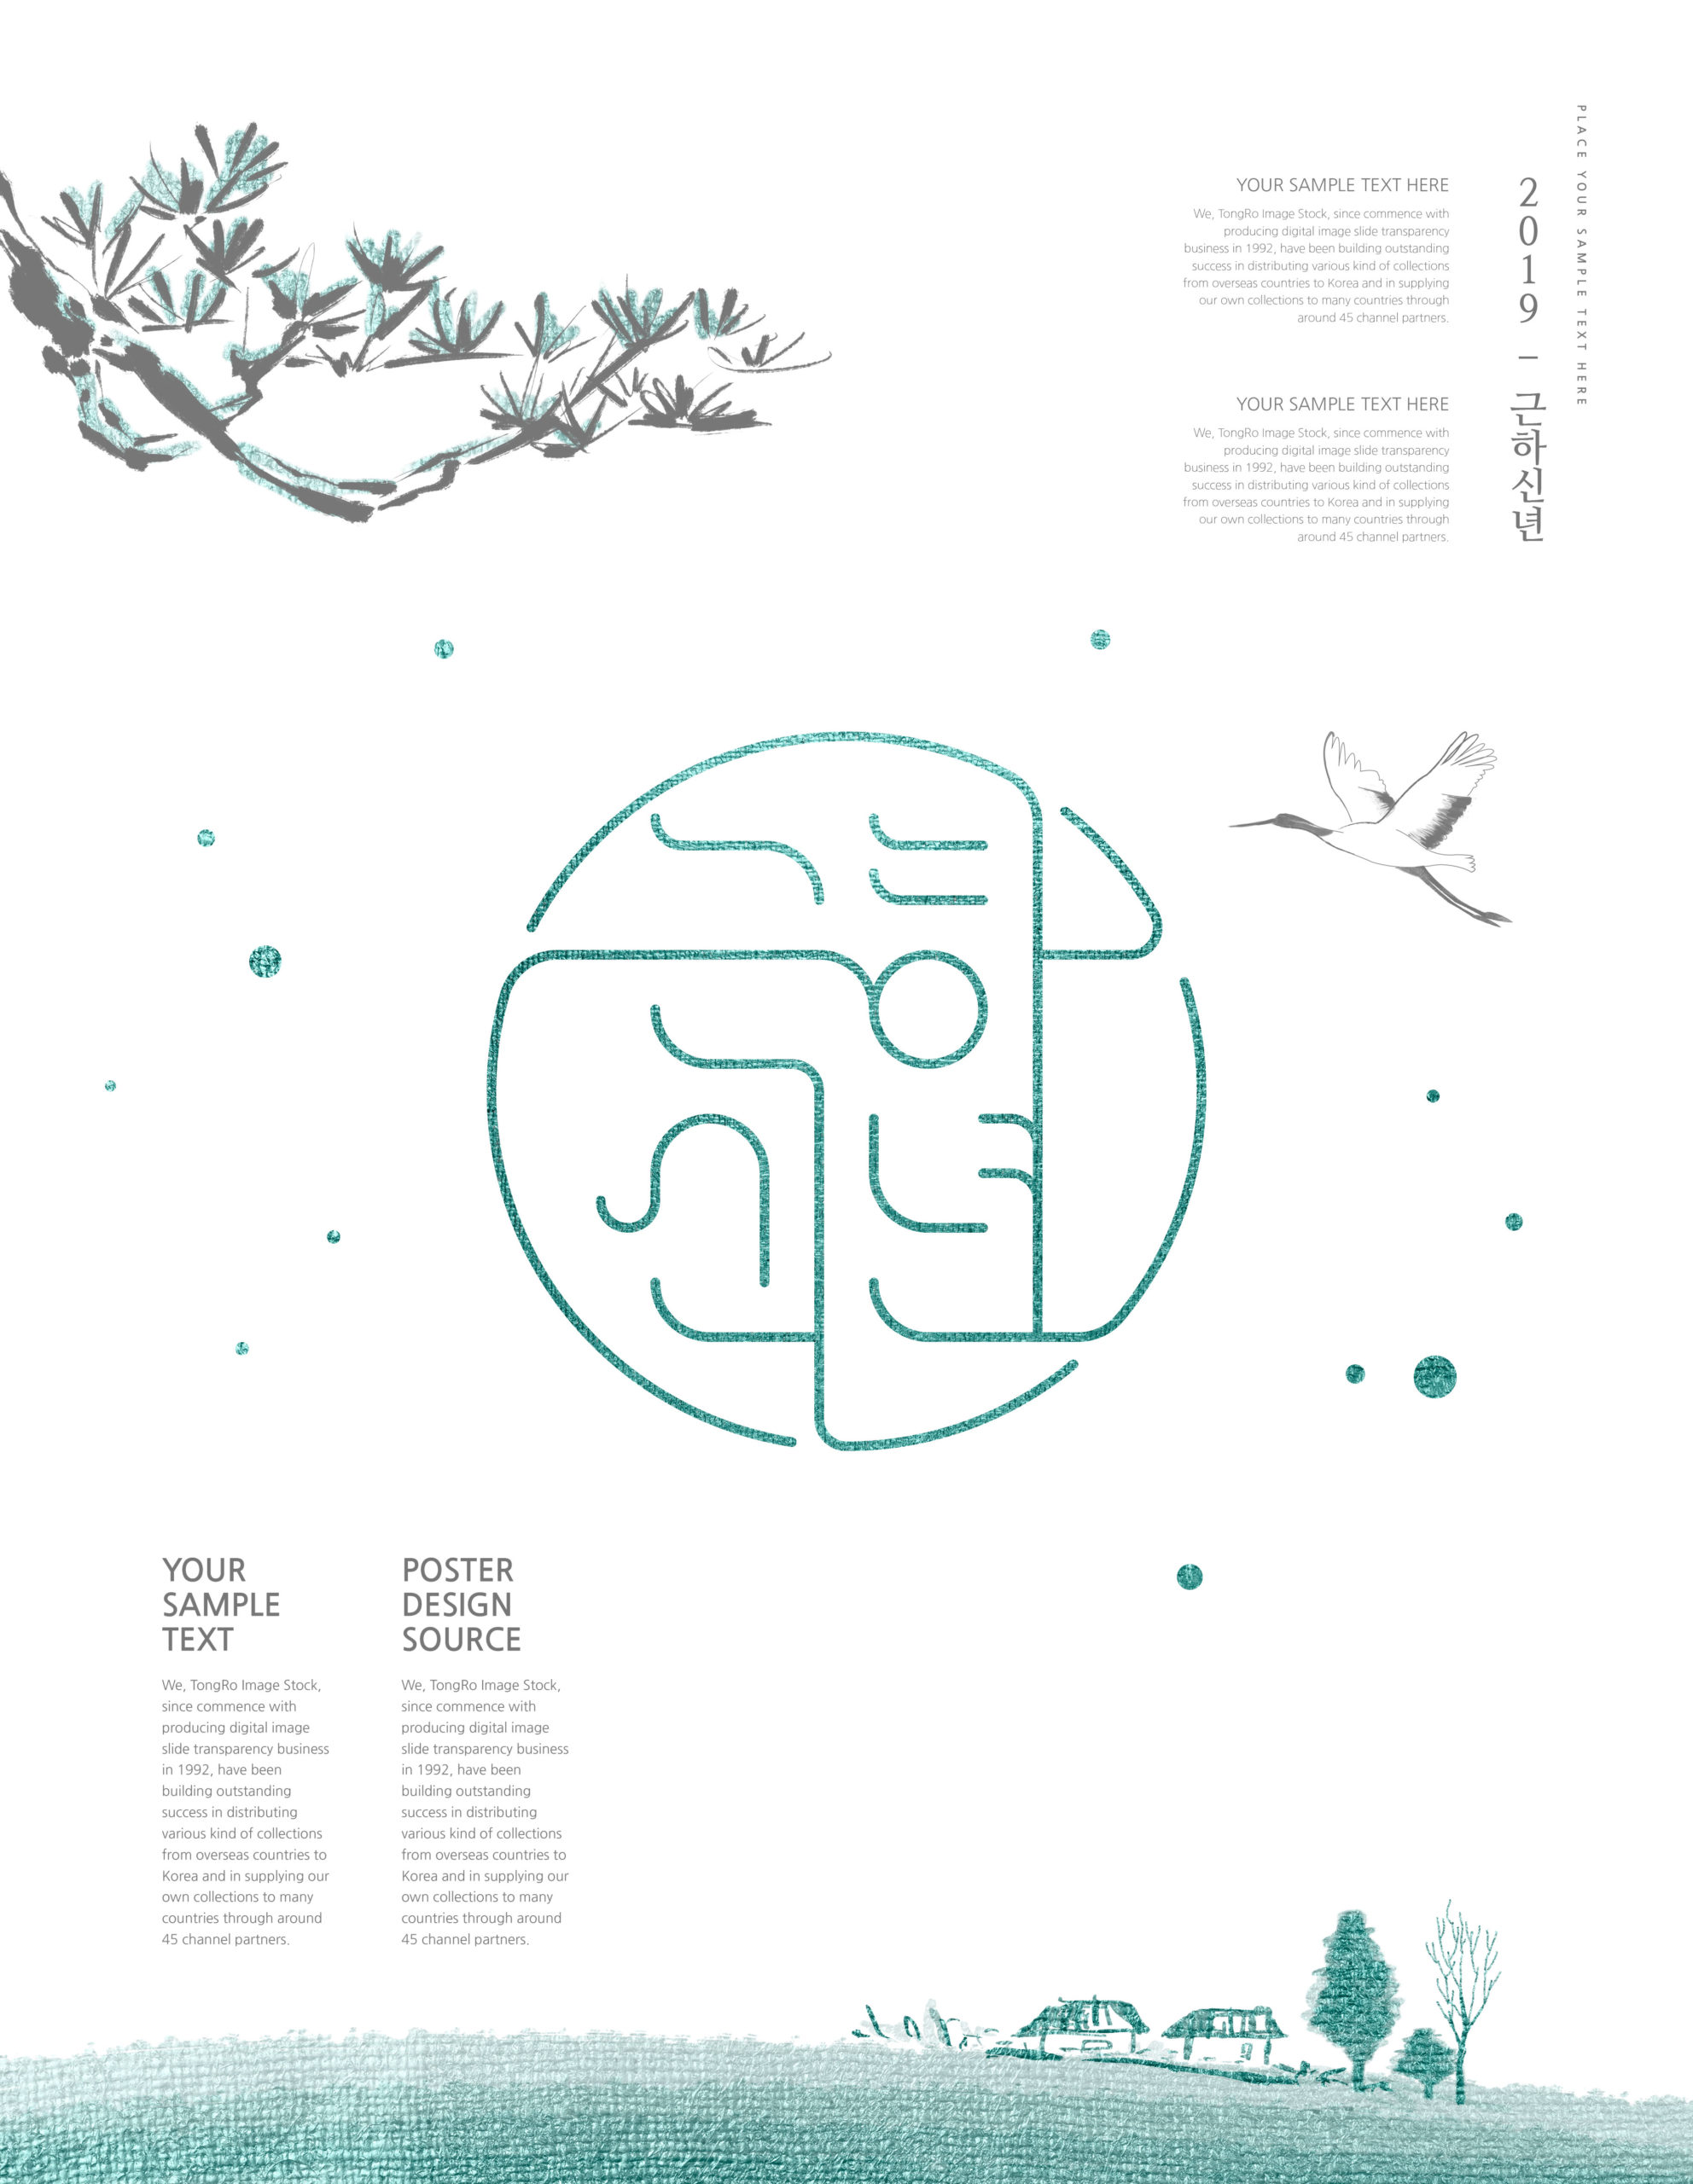 简约古风新年多用途韩国海报PSD素材第一素材精选素材插图